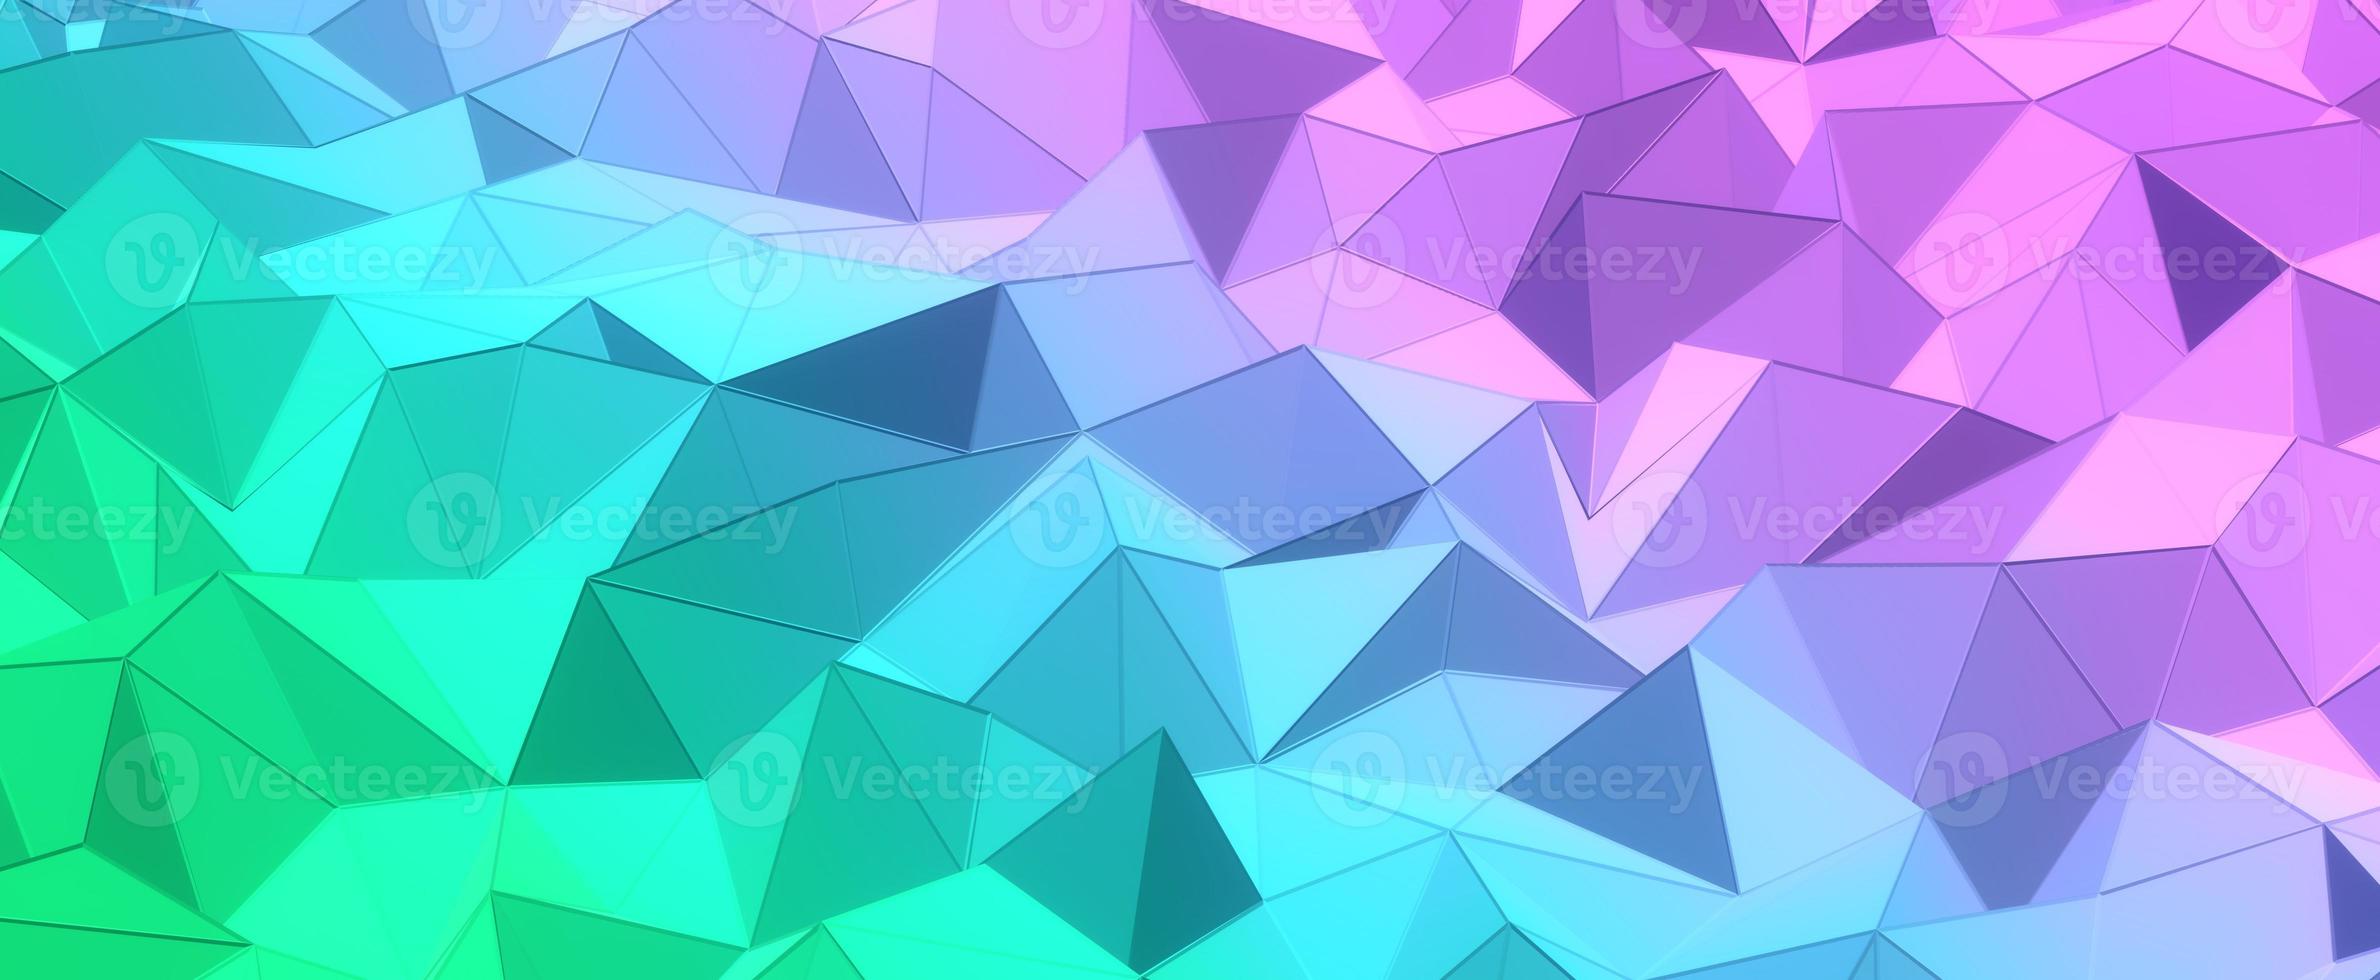 colinas de cristal roxo com fundo gradiente azul. polígono verde geométrico com malha de renderização 3d. texturas digitais triangulares empilhadas em formações criativas com interior futurista foto